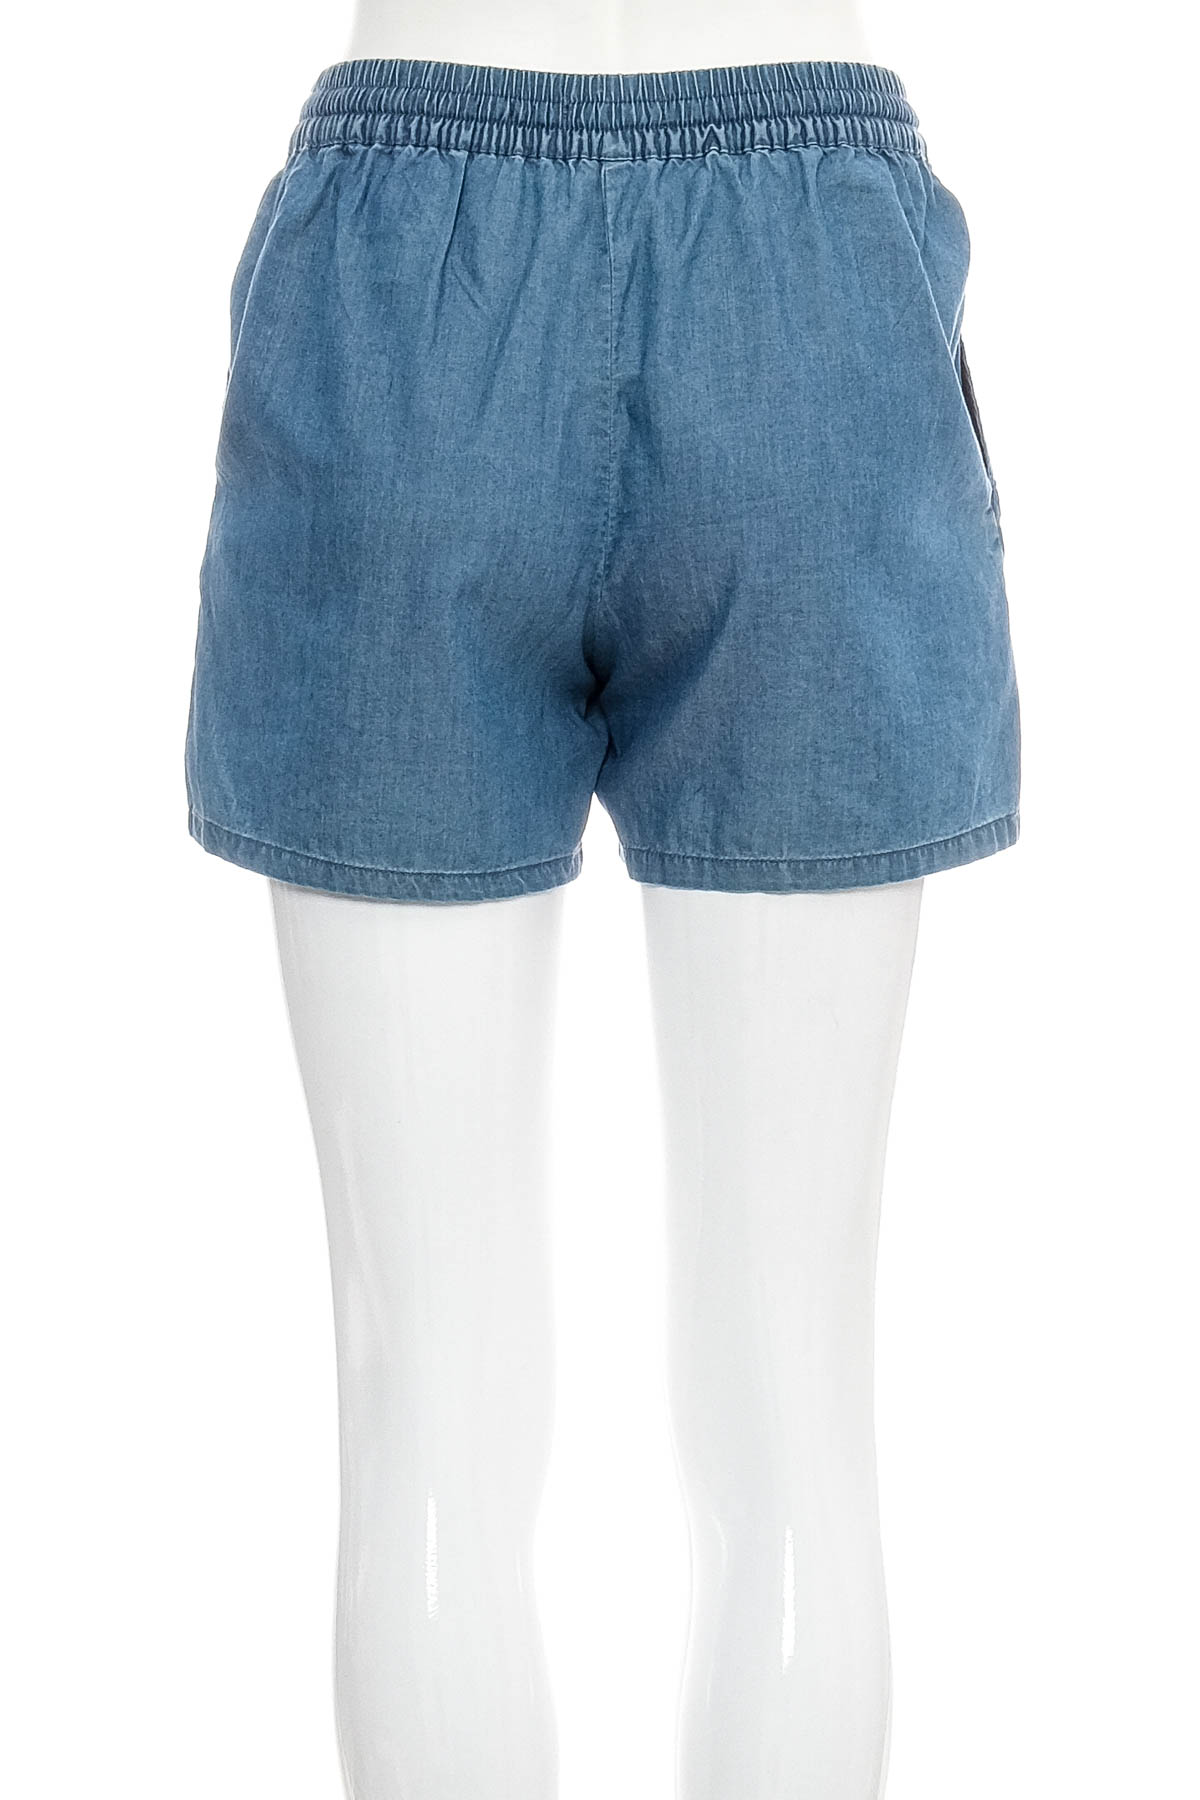 Female shorts - WE - 1